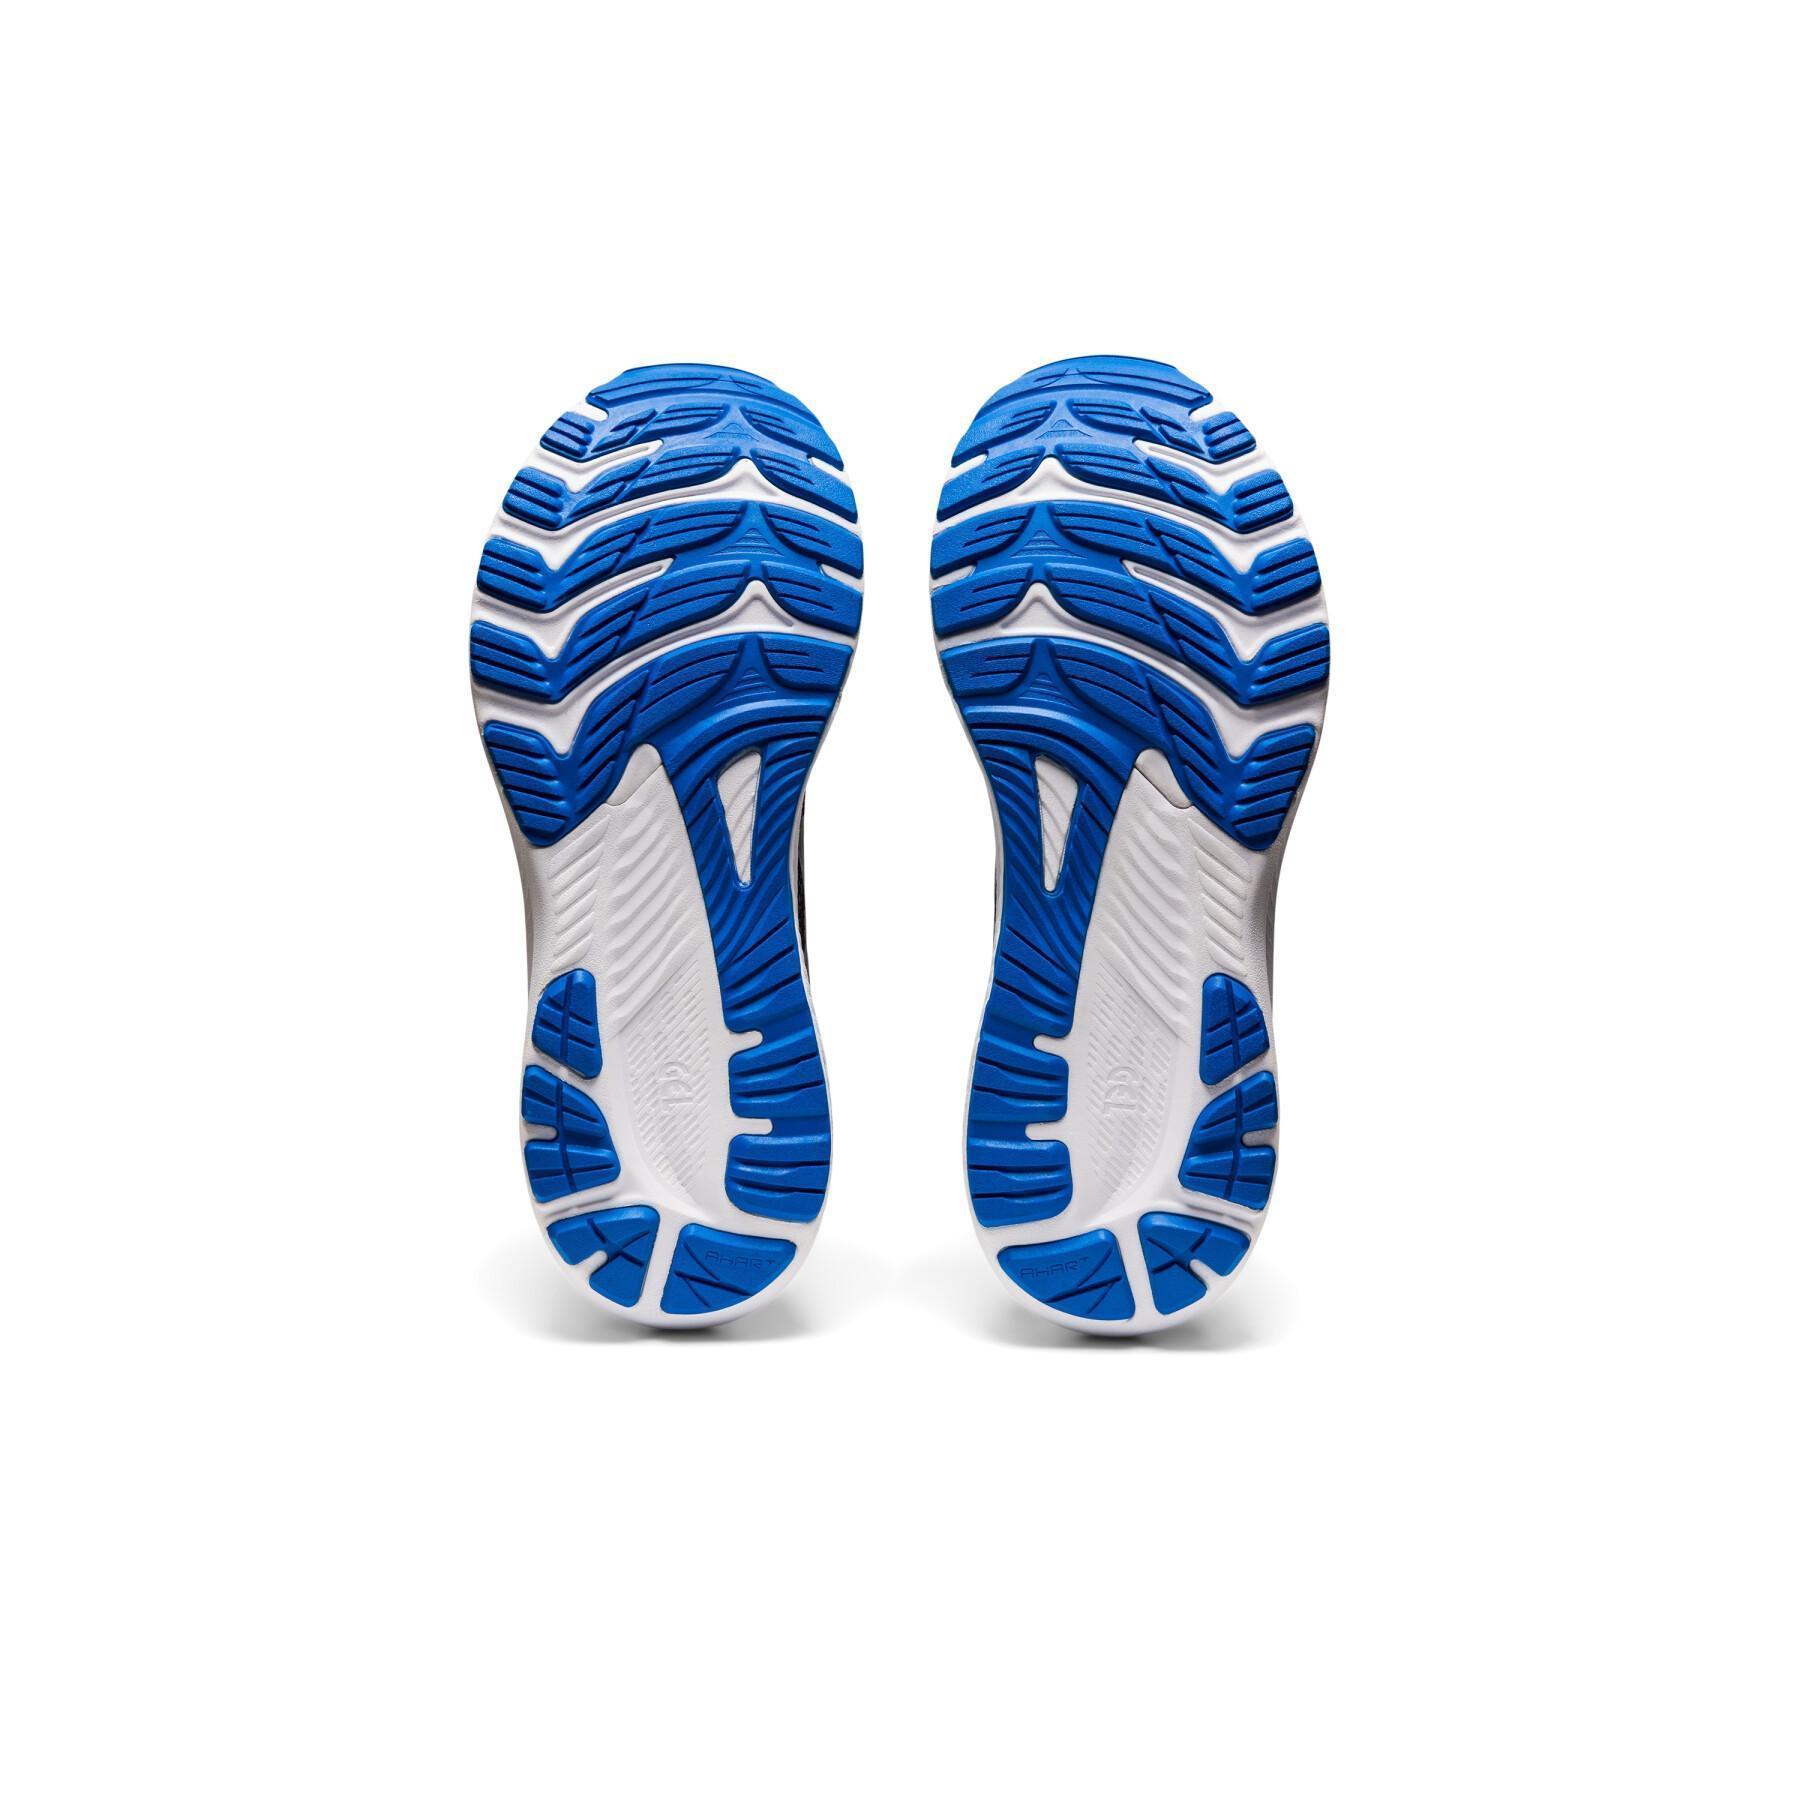 Chaussures de running Asics Gel-kayano 29